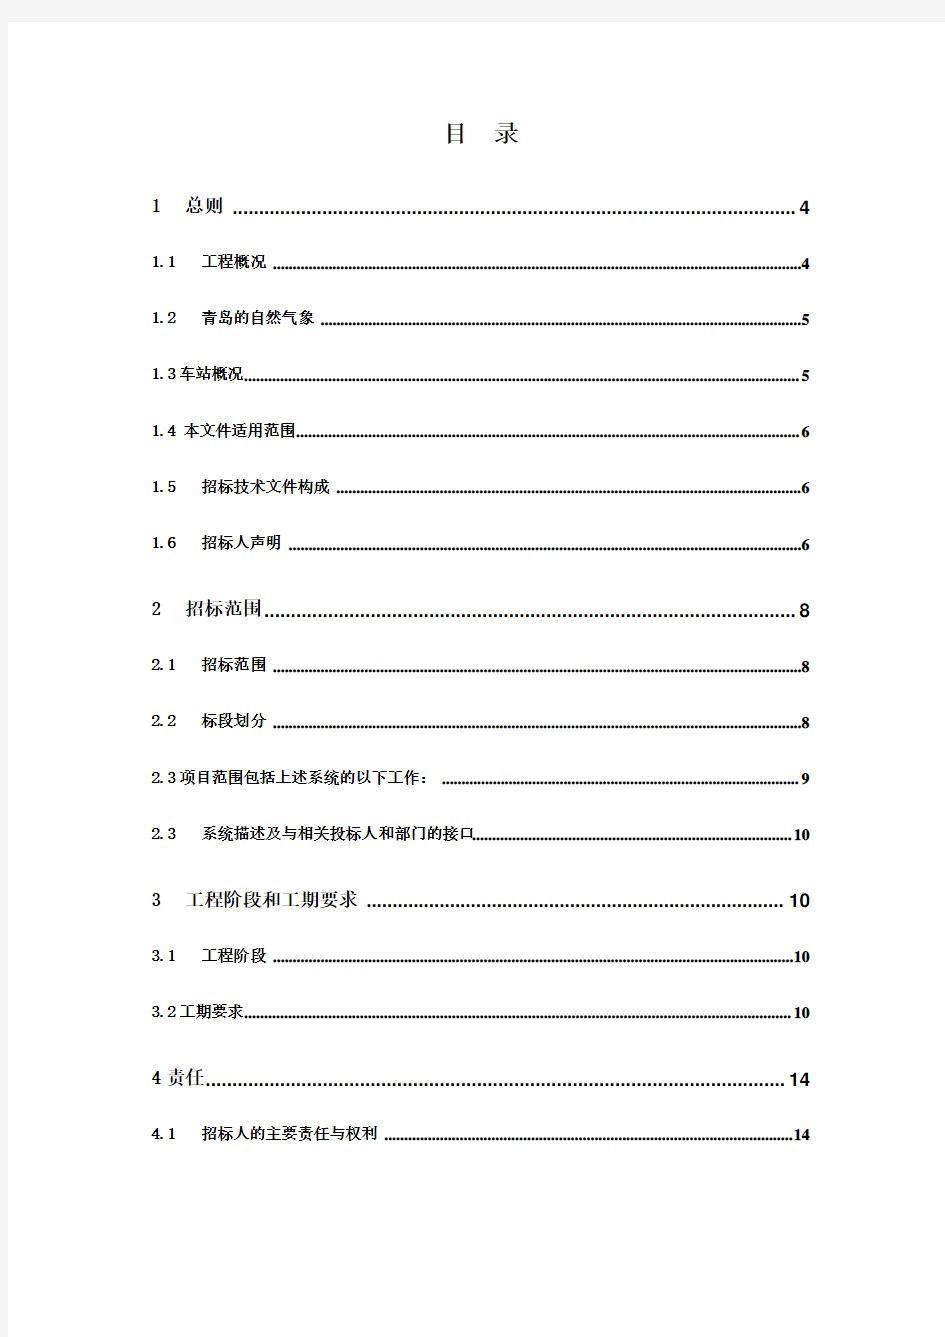 青岛市地铁一期工程(3号线)机电系统安装施工总承包用户需求书(终版)